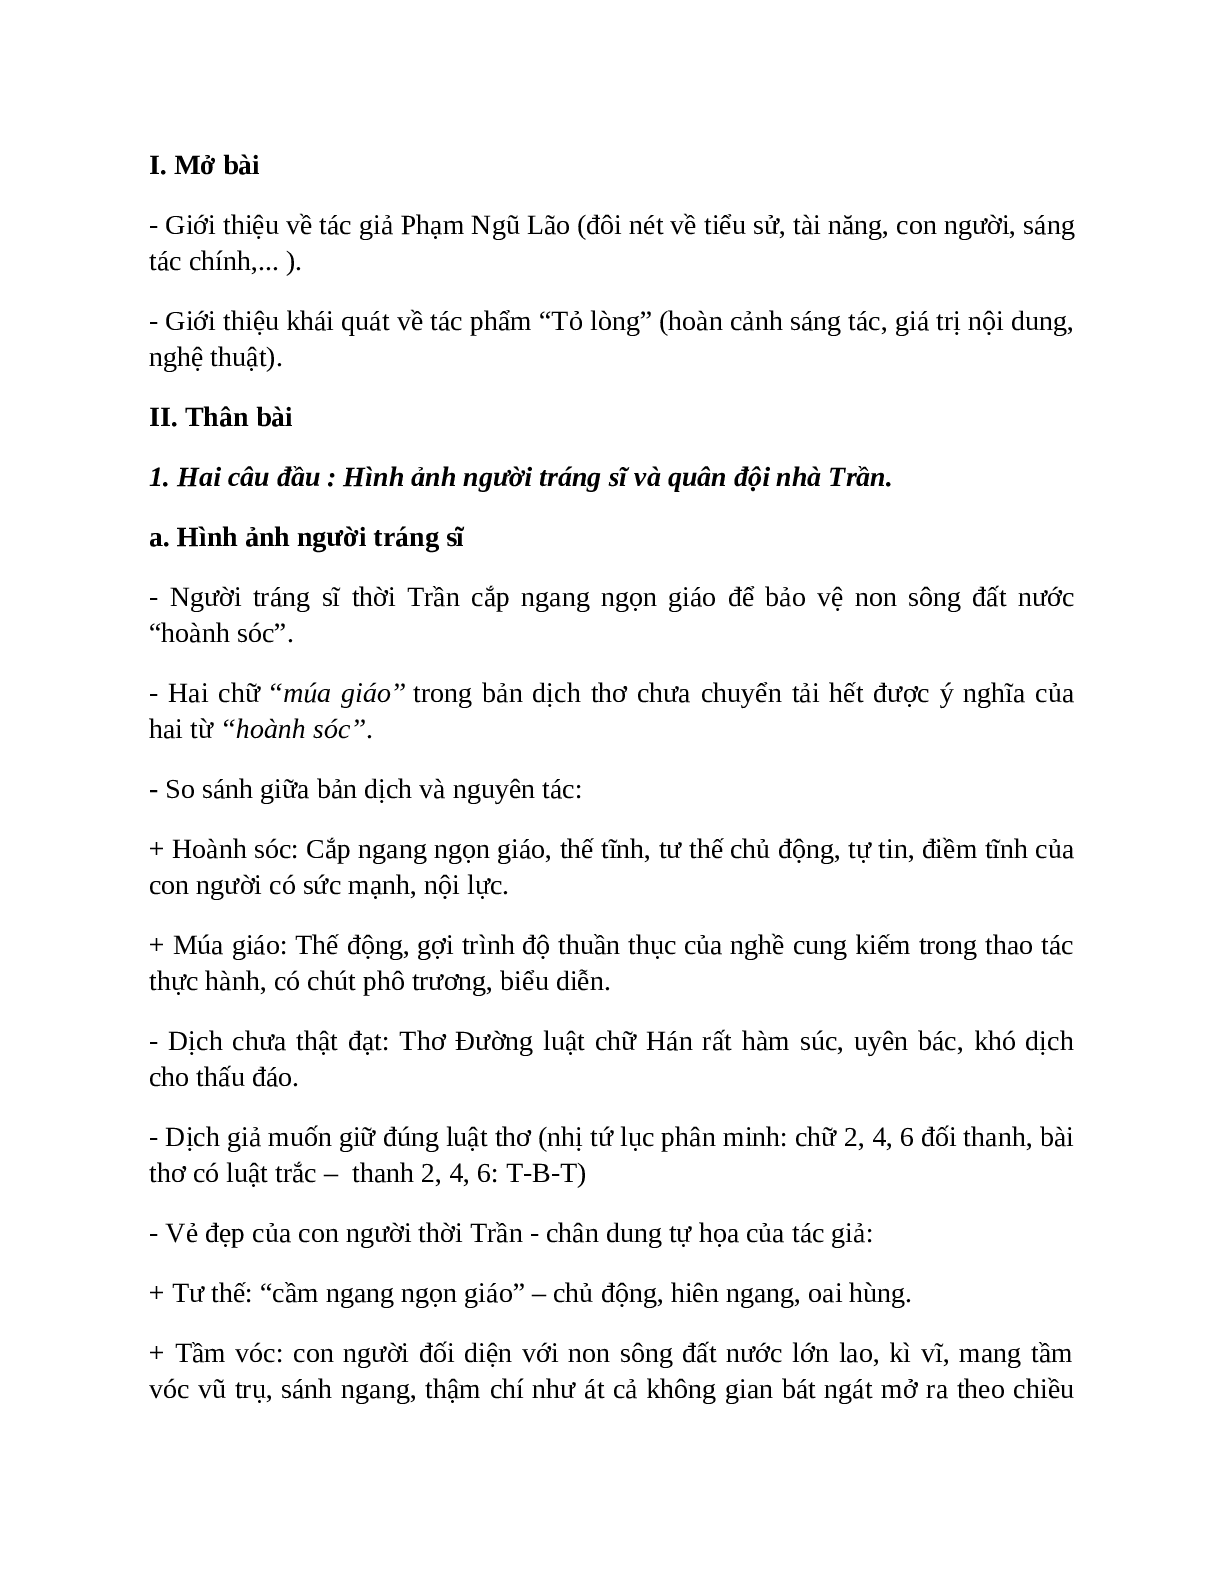 Sơ đồ tư duy bài Tỏ lòng dễ nhớ, ngắn nhất - Ngữ văn lớp 10 (trang 3)